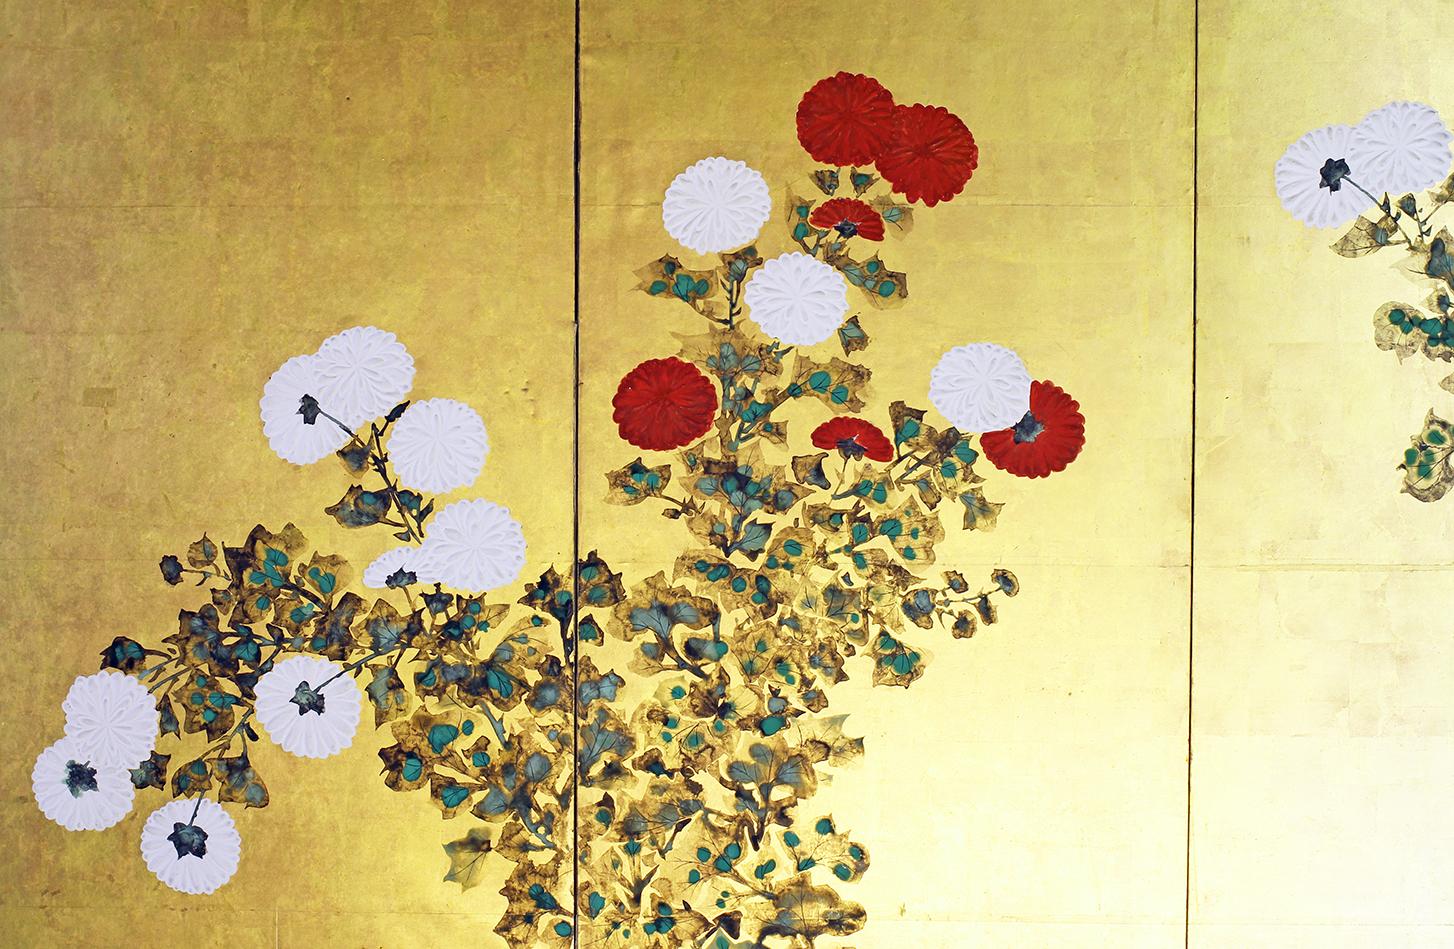 Paysage printanier d'un peintre inconnu de l'école Rinpa, XIXe siècle, six panneaux peints à l'encre sur feuille d'or sur papier de riz.
Les fleurs sont réalisées avec la technique du 